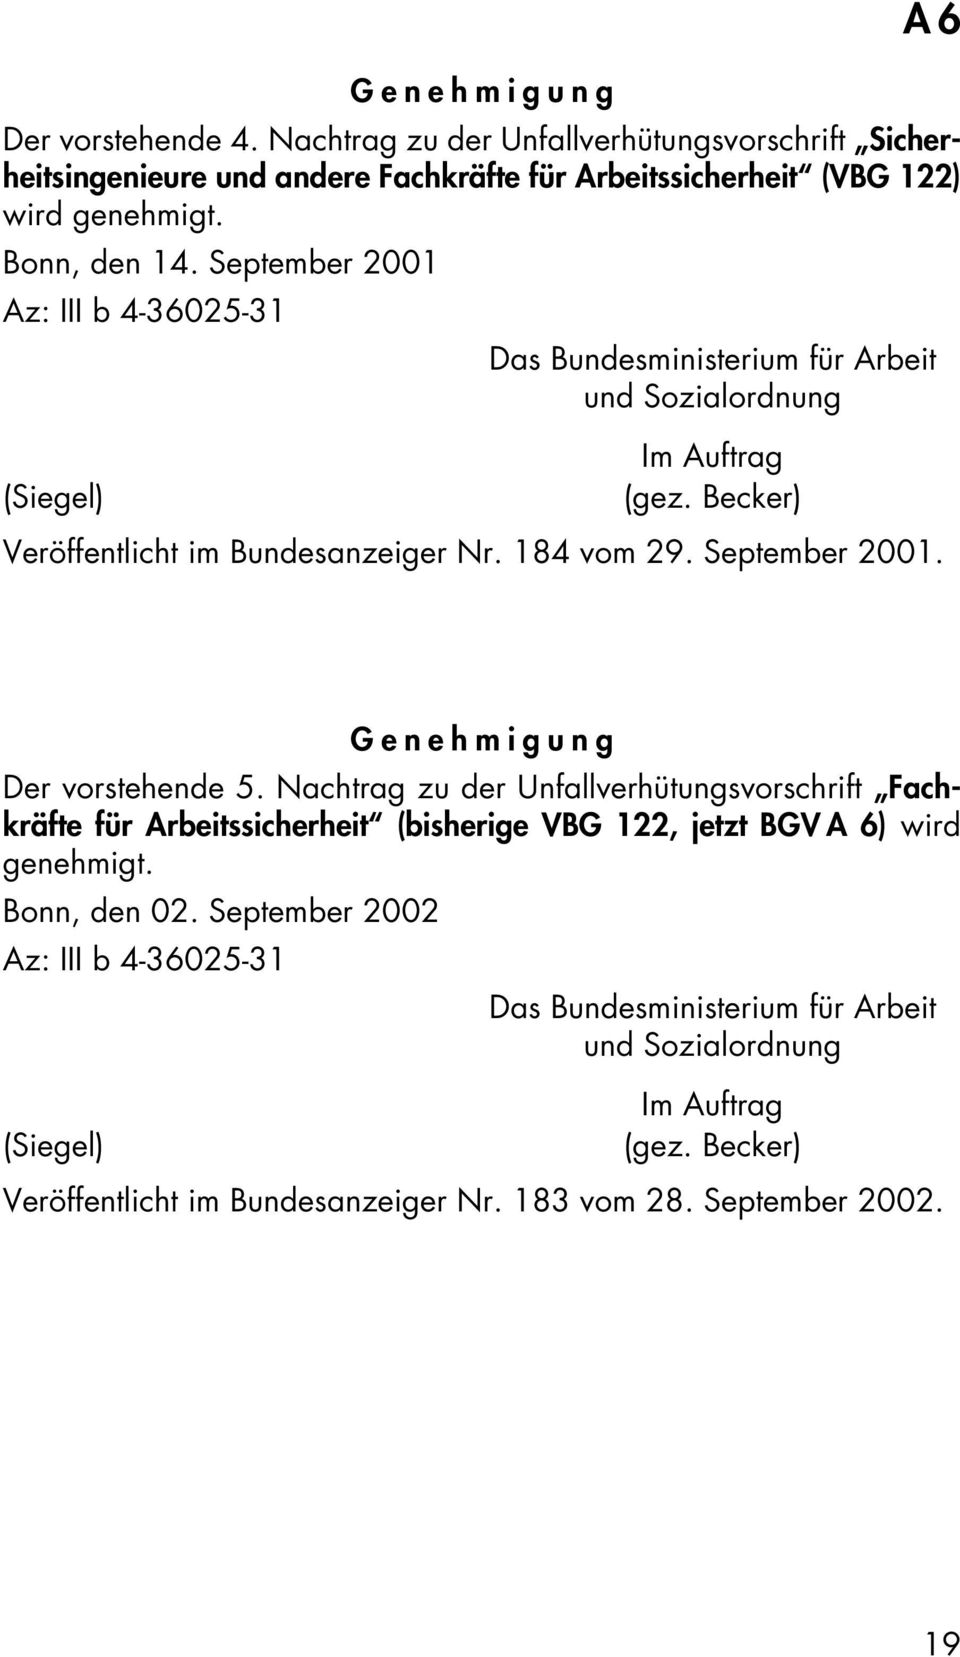 September 2001. A6 Genehmigung Der vorstehende 5. Nachtrag zu der Unfallverhütungsvorschrift Fachkräfte für Arbeitssicherheit (bisherige VBG 122, jetzt BGV A 6) wird genehmigt.